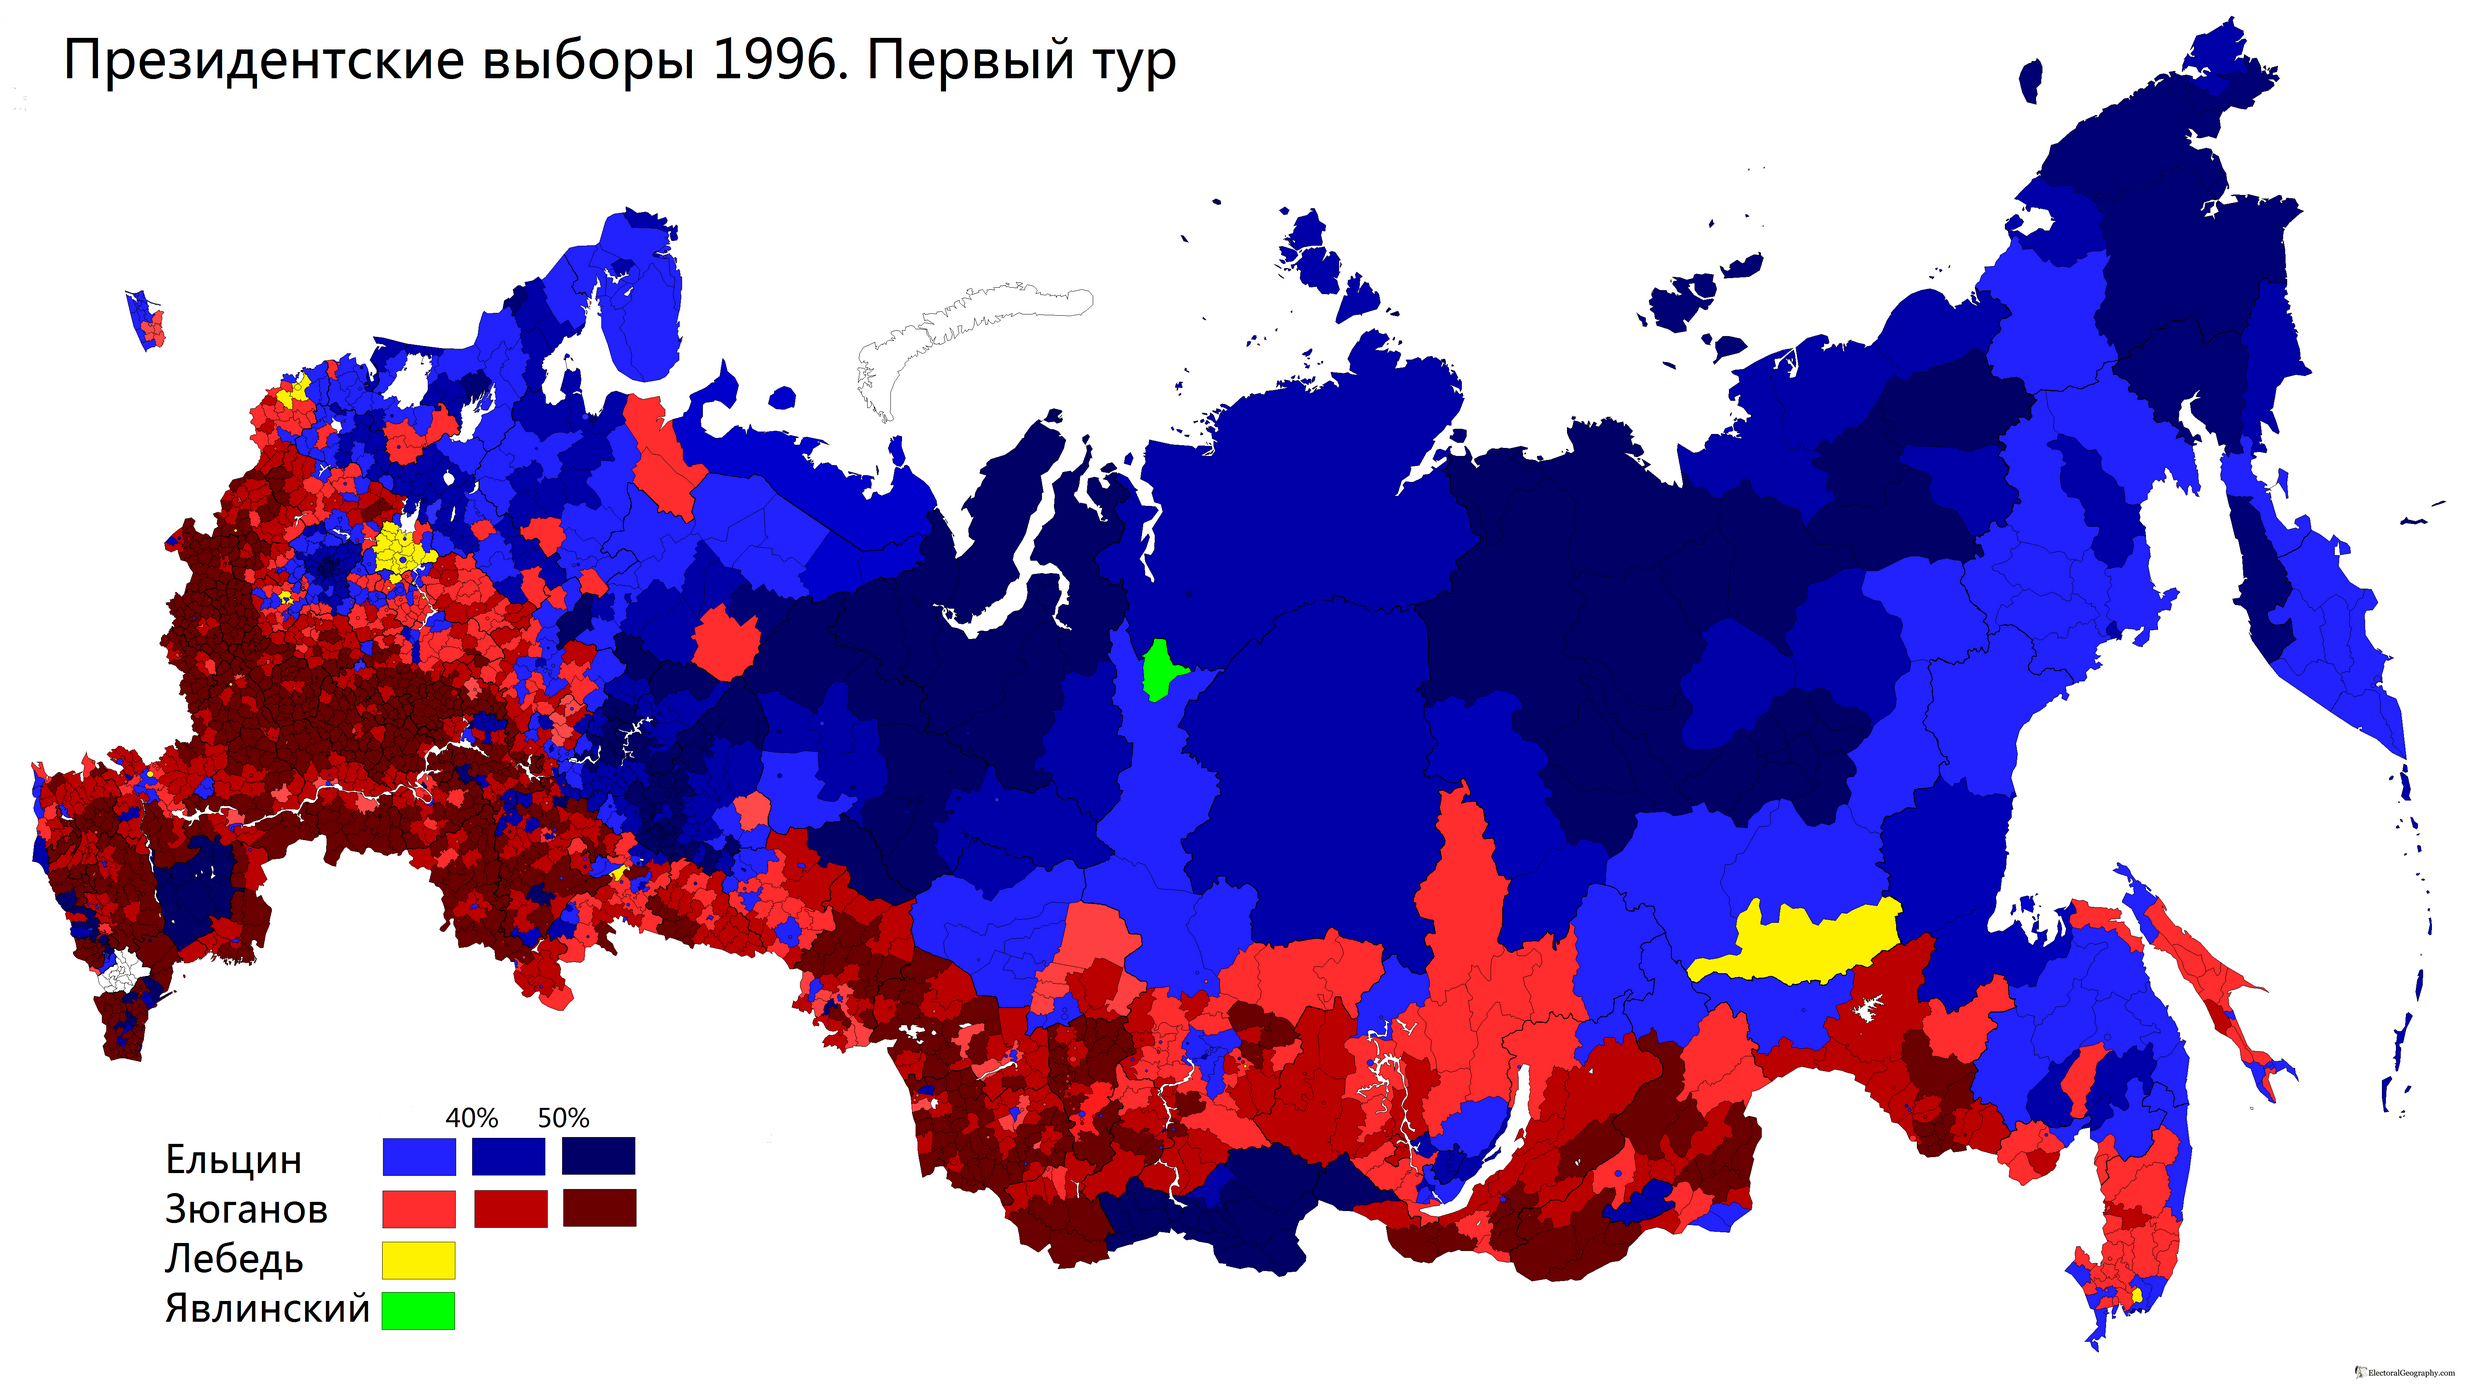 Голосовали целый. Карта выборов президента России 1996. Президентские выборы в России 1996 карта. Президентские выборы 1996 года в России. Карта выборов 1996 года.